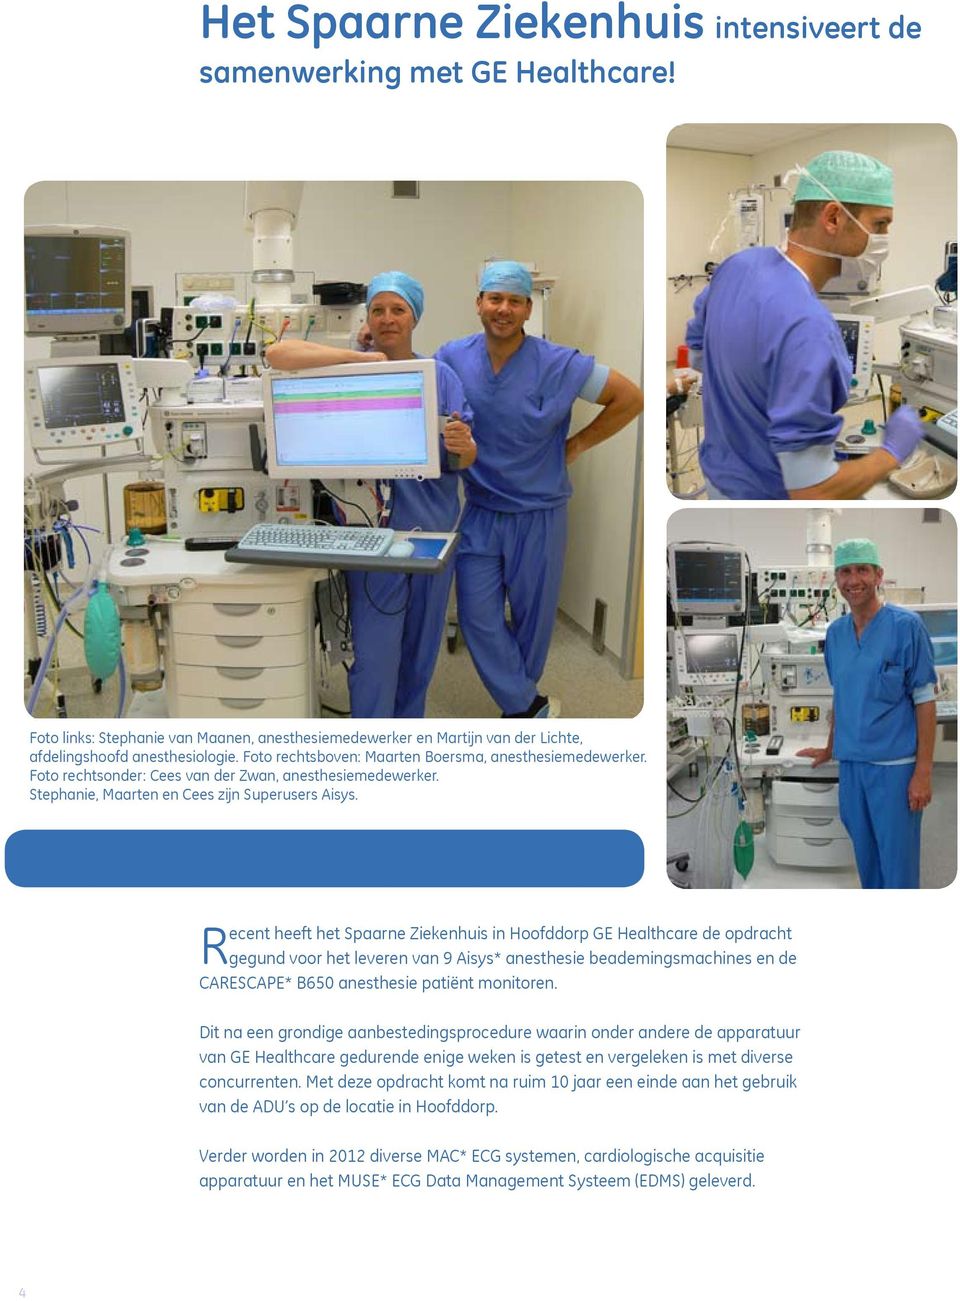 Recent heeft het Spaarne Ziekenhuis in Hoofddorp GE Healthcare de opdracht gegund voor het leveren van 9 Aisys* anesthesie beademingsmachines en de CARESCAPE* B650 anesthesie patiënt monitoren.